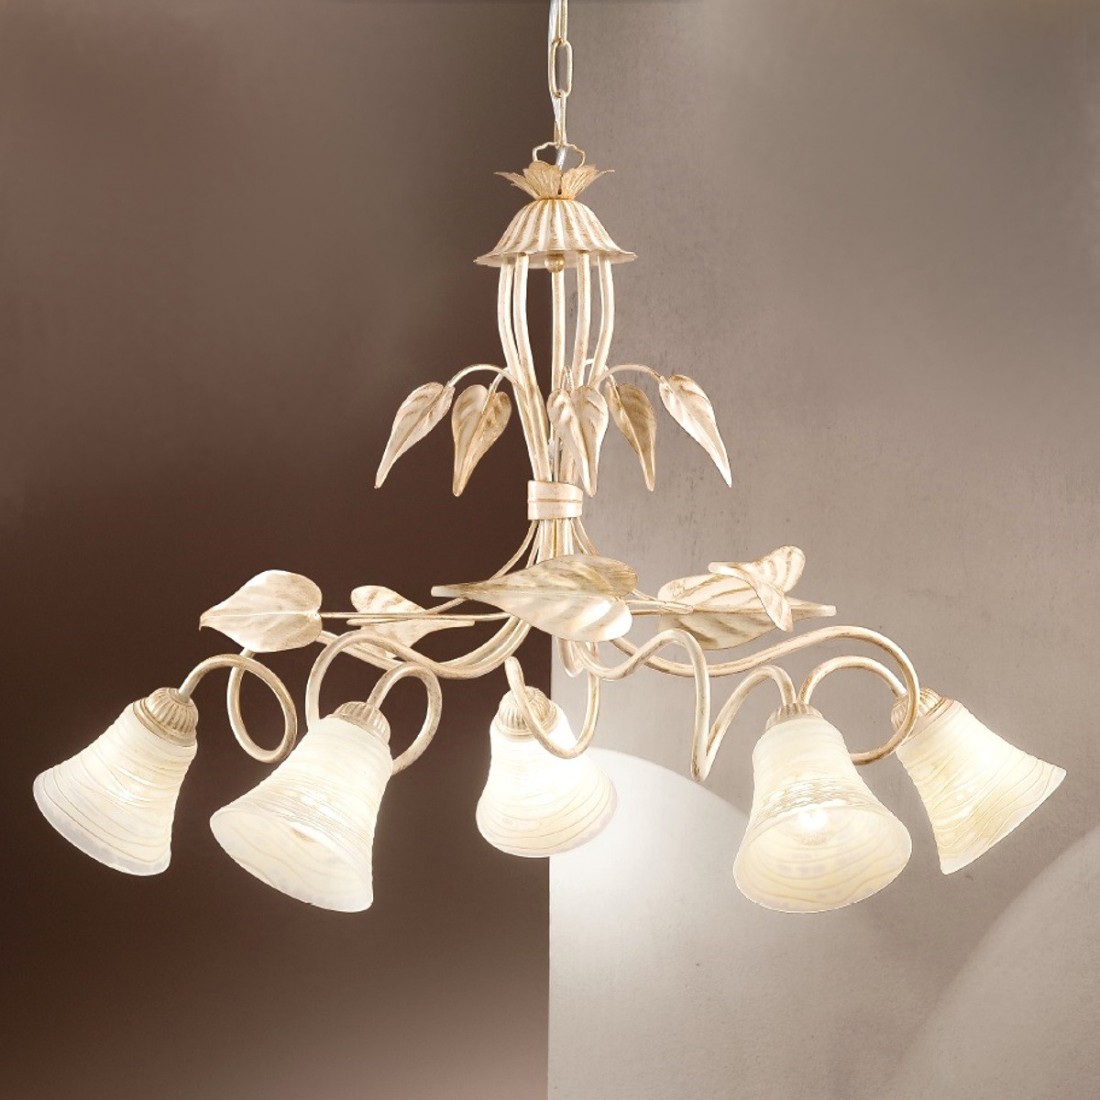 Lampadario DP-TOSCA S5 E14 LED ferro bianco brunito campanina vetro sospensione classica floreale